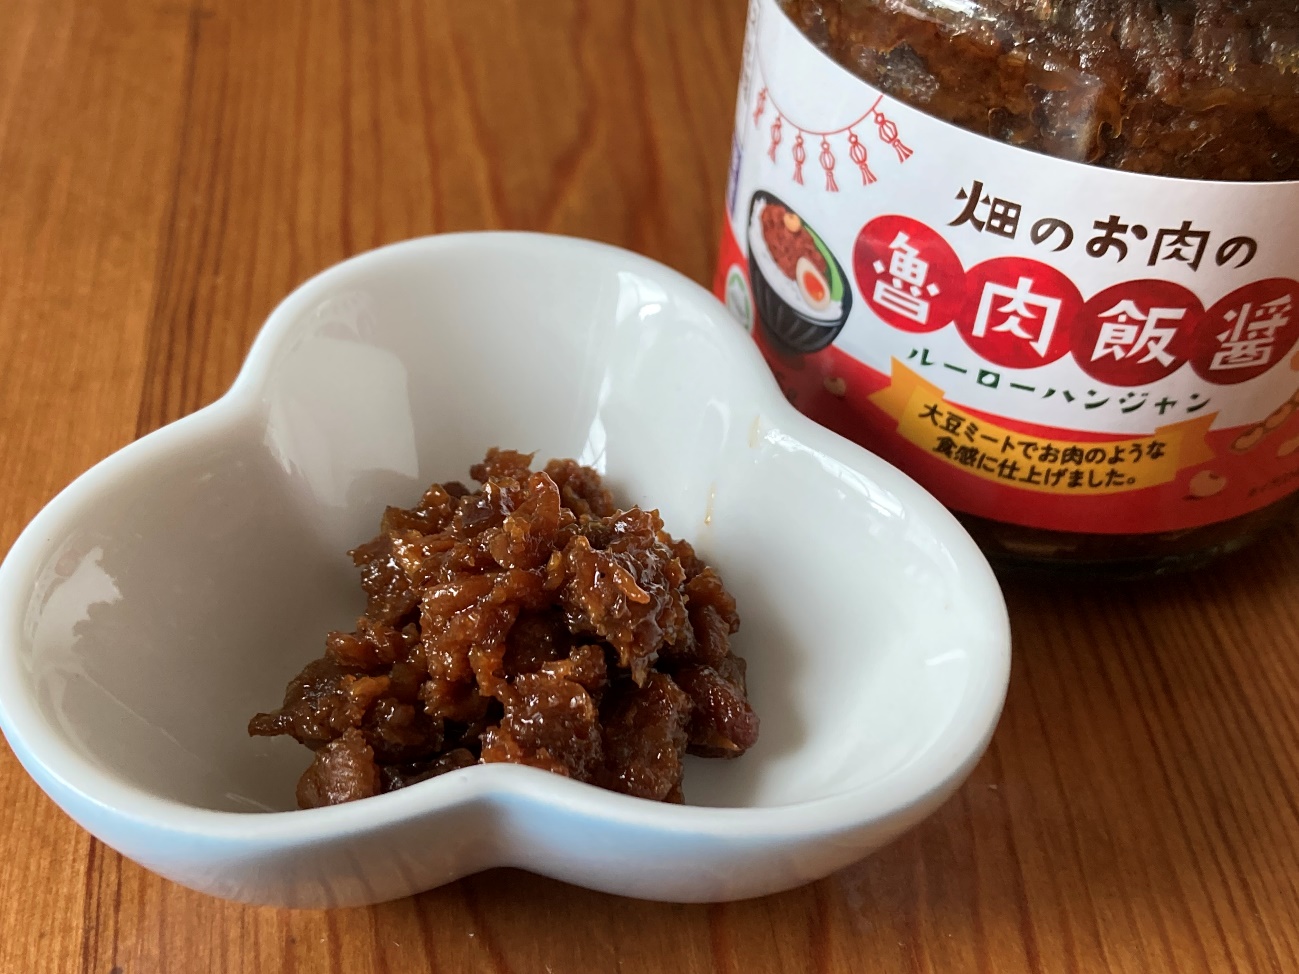 業務スーパーの畑のお肉の魯肉飯醬(ルーローハンジャン)の瓶と中身